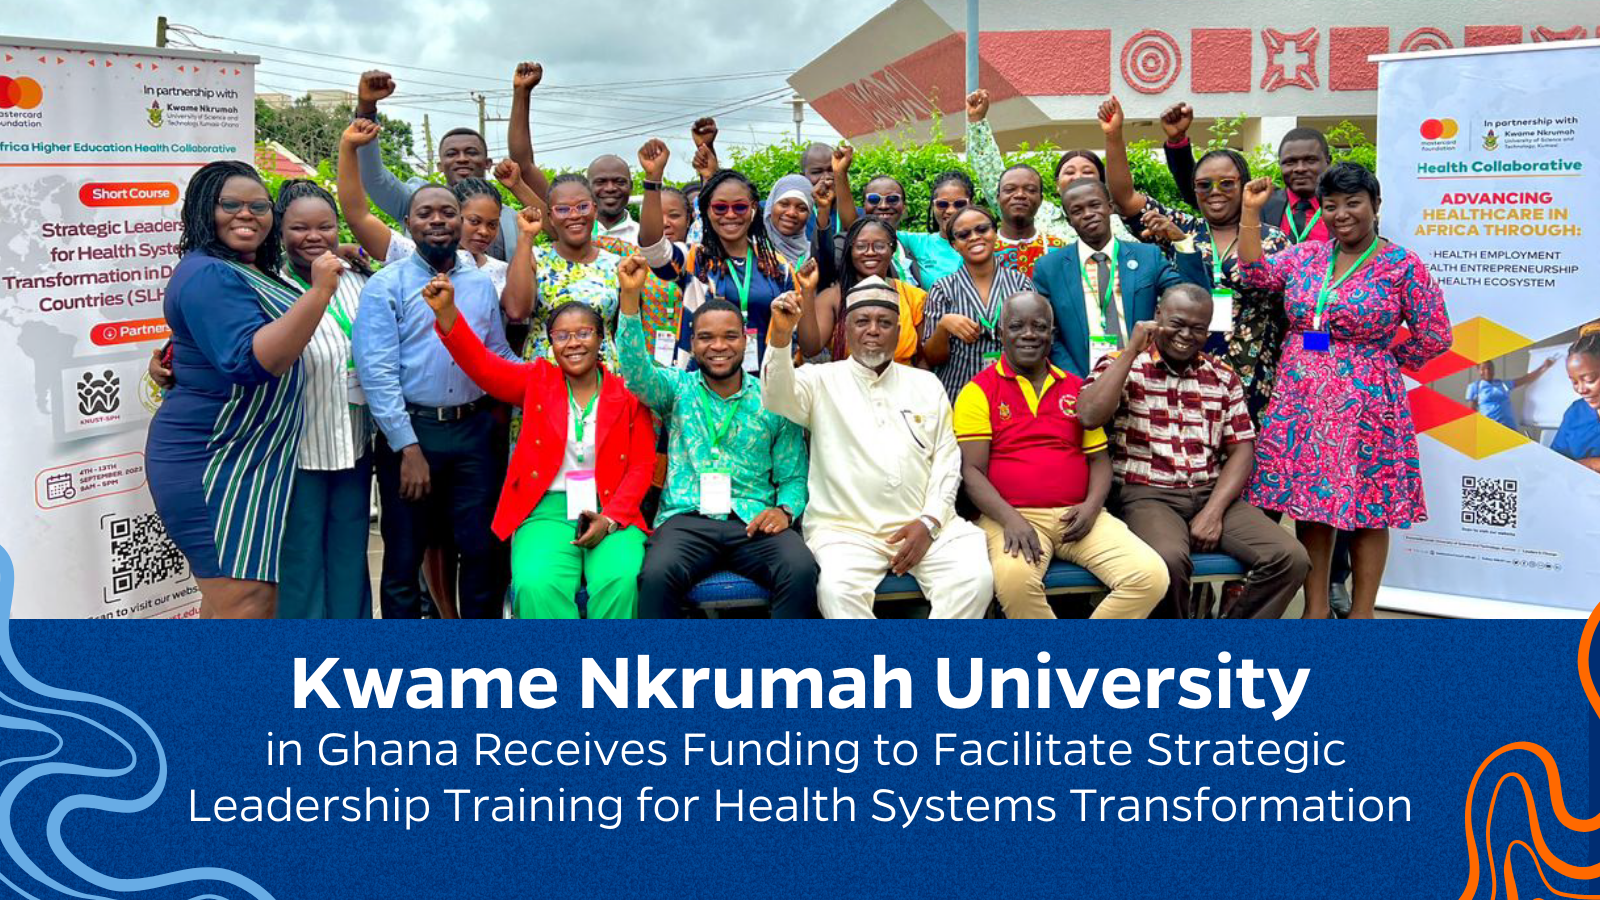 La Universidad Kwame Nkrumah de Ghana recibe financiación para facilitar la formación en liderazgo estratégico para la transformación de los sistemas sanitarios